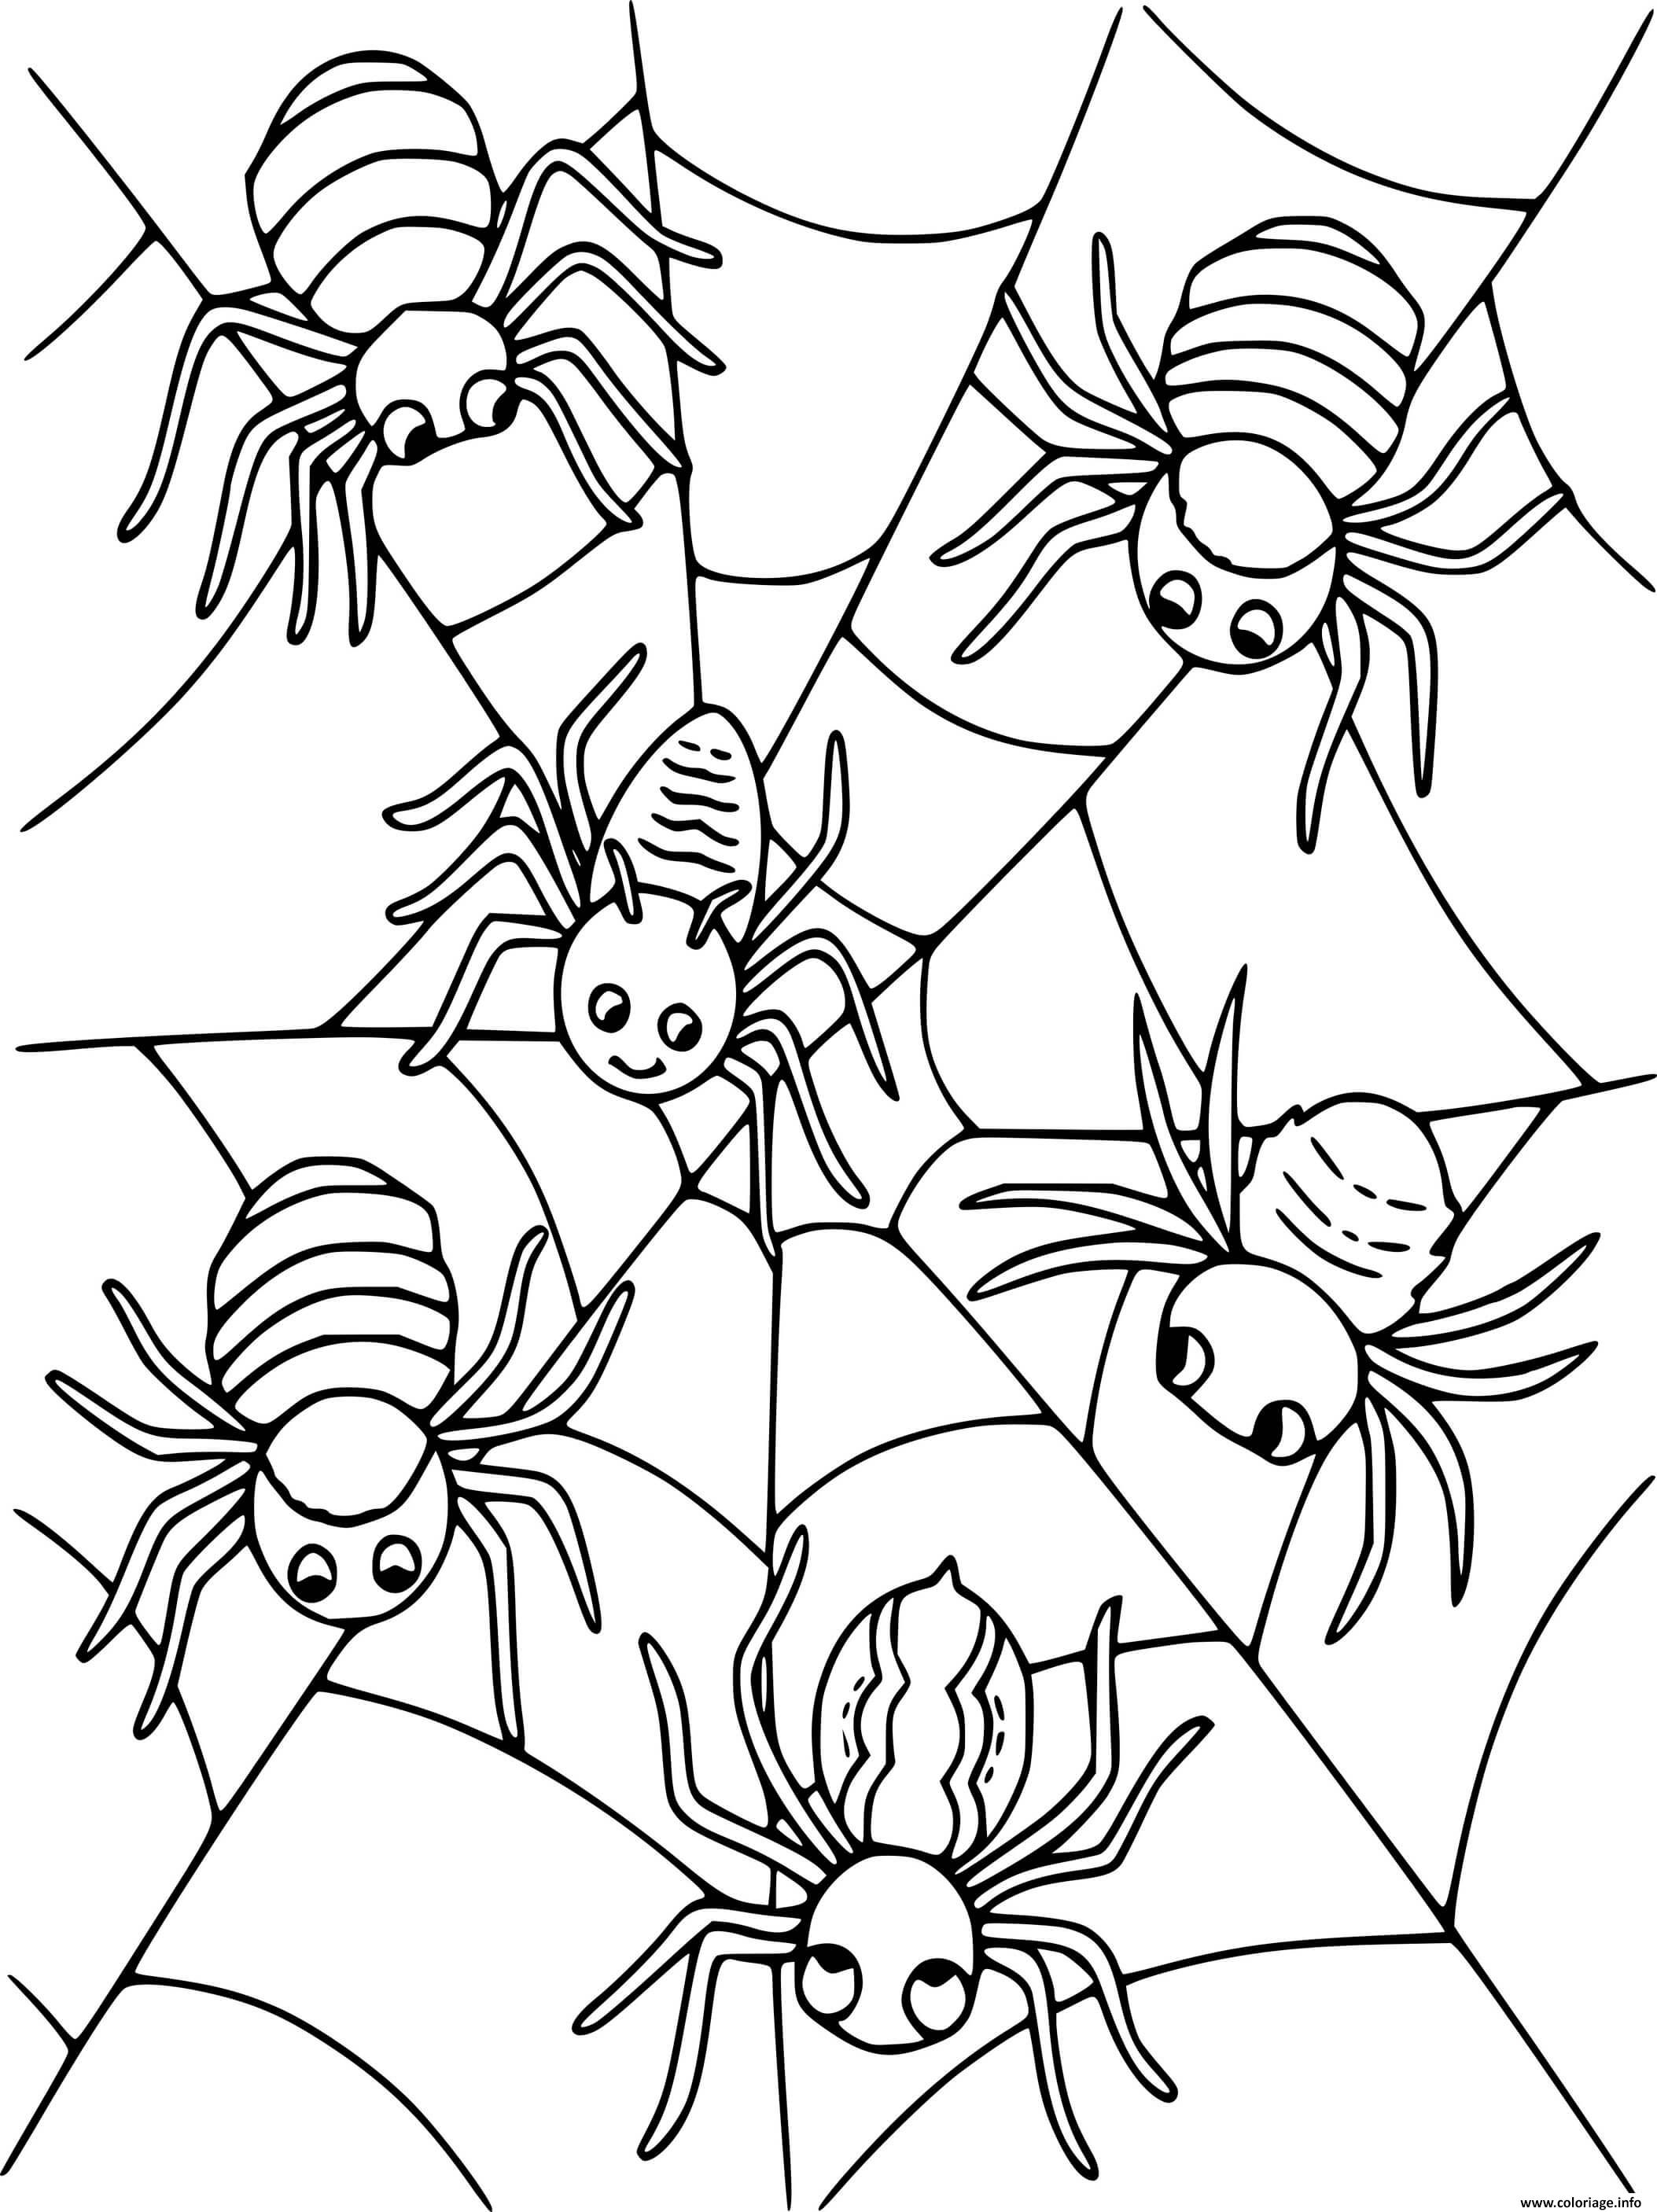 Раскраска насекомые для детей 7 лет. Насекомые. Раскраска. Насекомые раскраска для детей. Раскраска насекомые для малышей. Паук раскраска для детей.